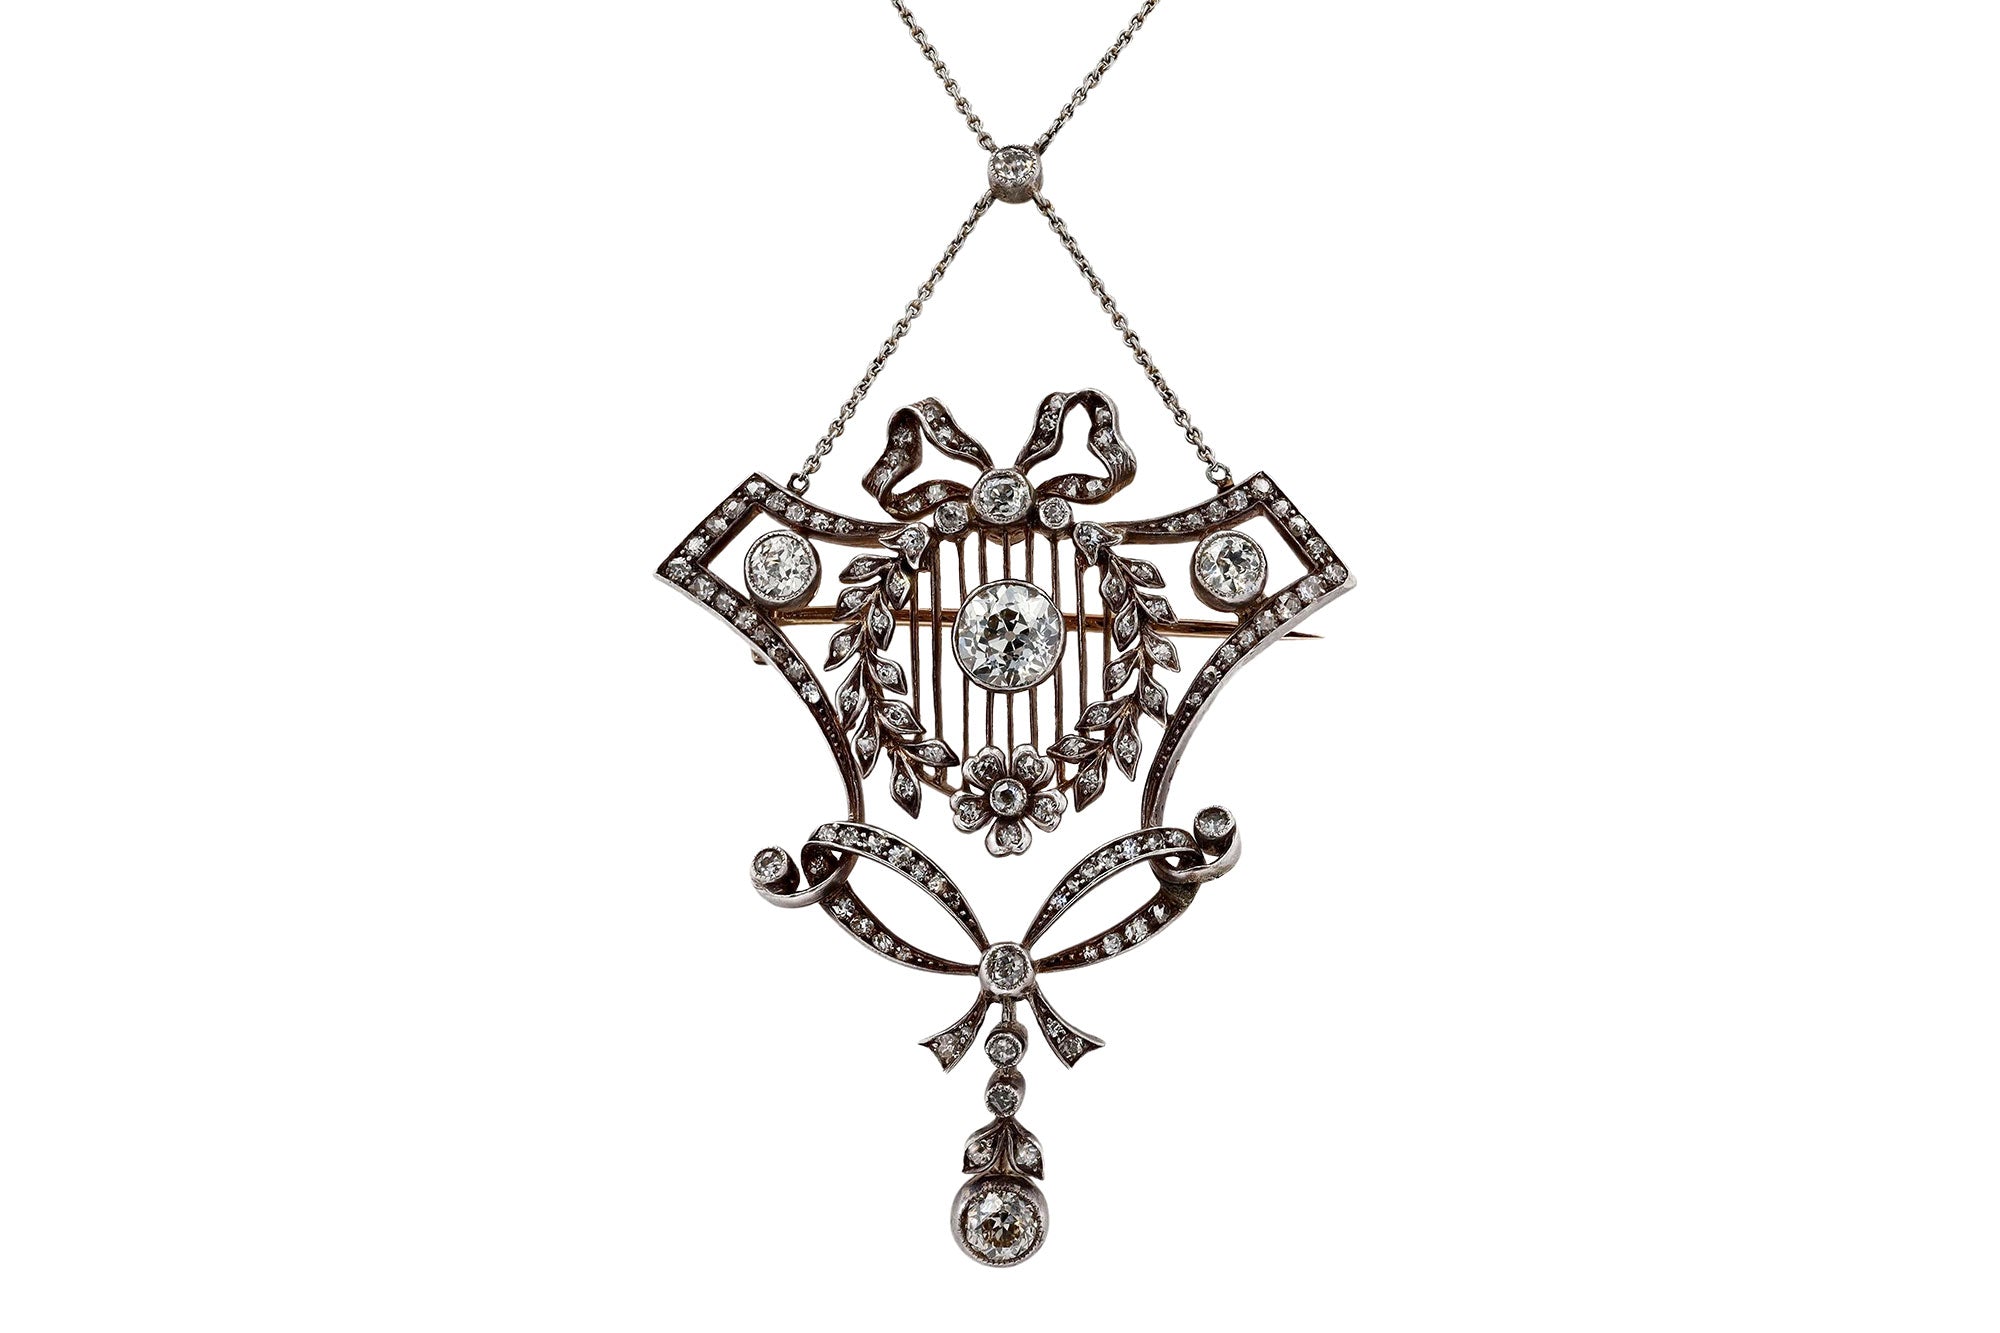 Antique Lavaliere Necklace